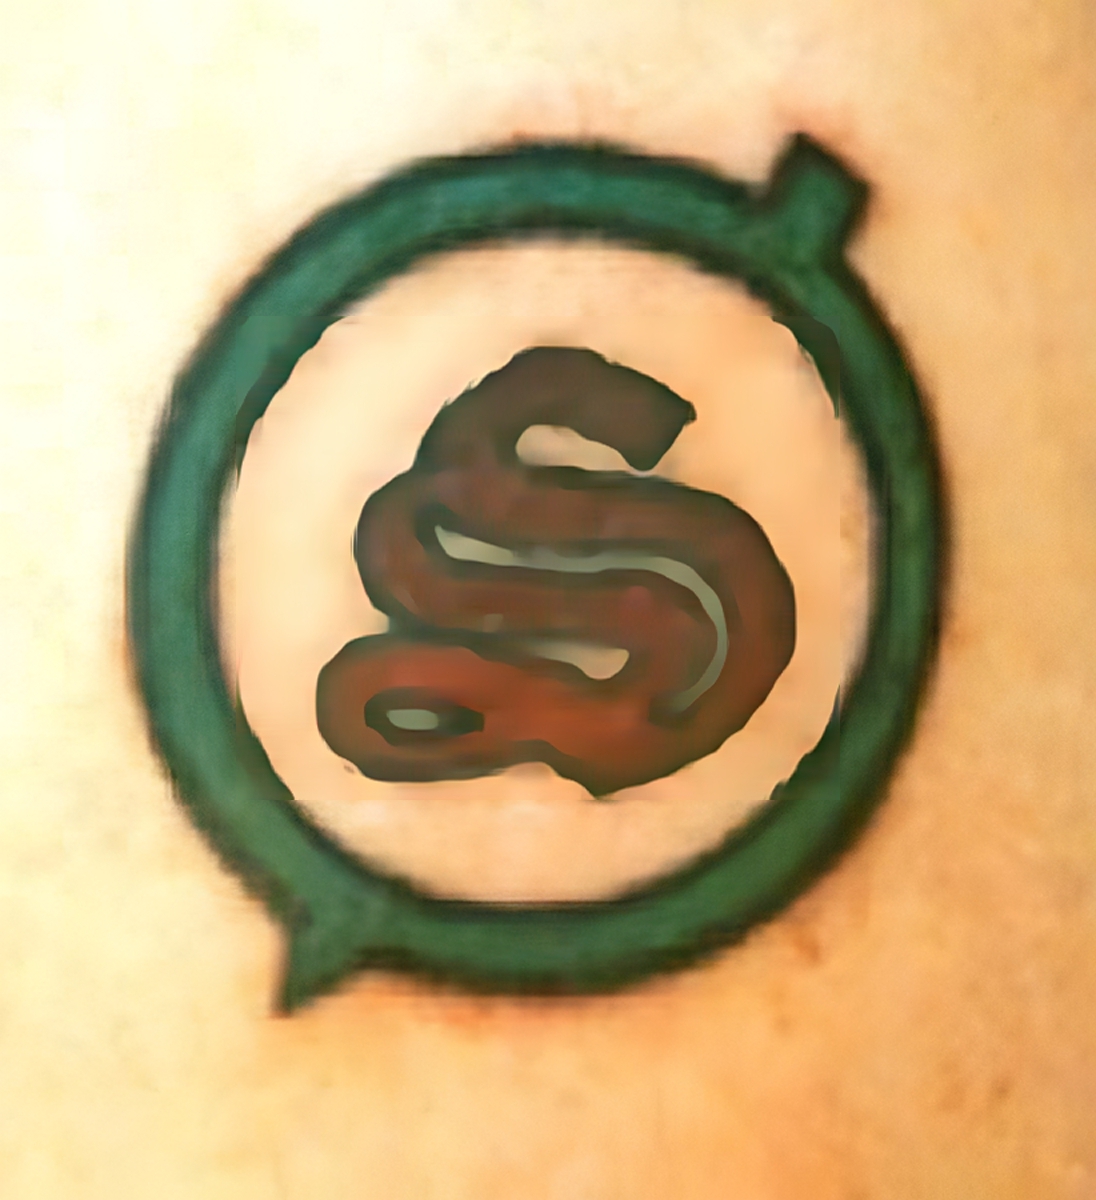 Kreis mit S-förmigem Symbol